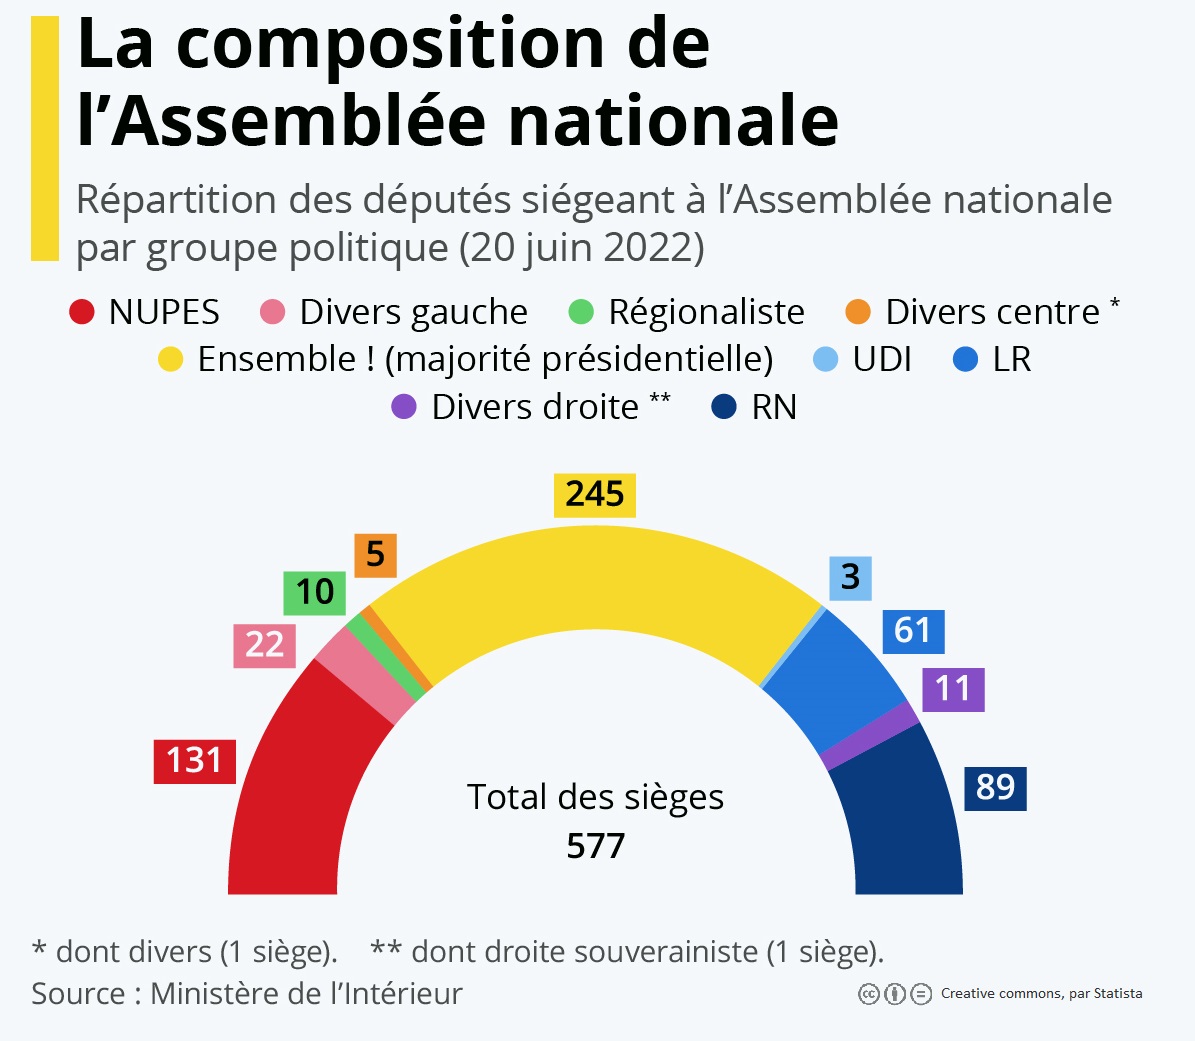 Les élections législatives 2022 en France  dossier de ressources. Juin